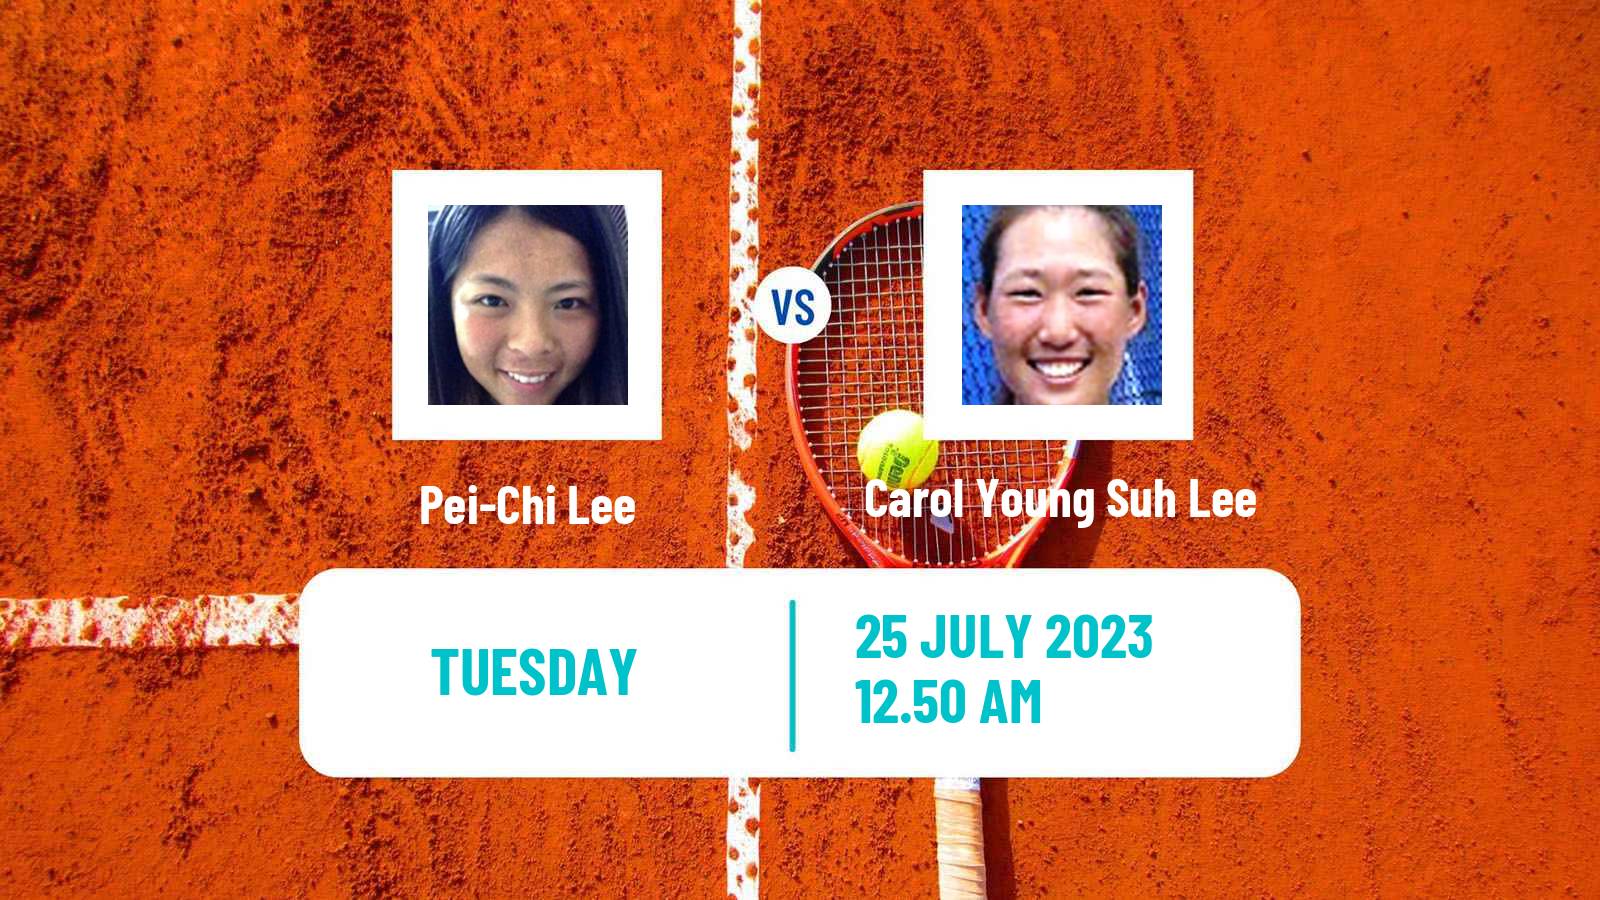 Tennis WTA Billie Jean King Cup Group II Pei-Chi Lee - Carol Young Suh Lee